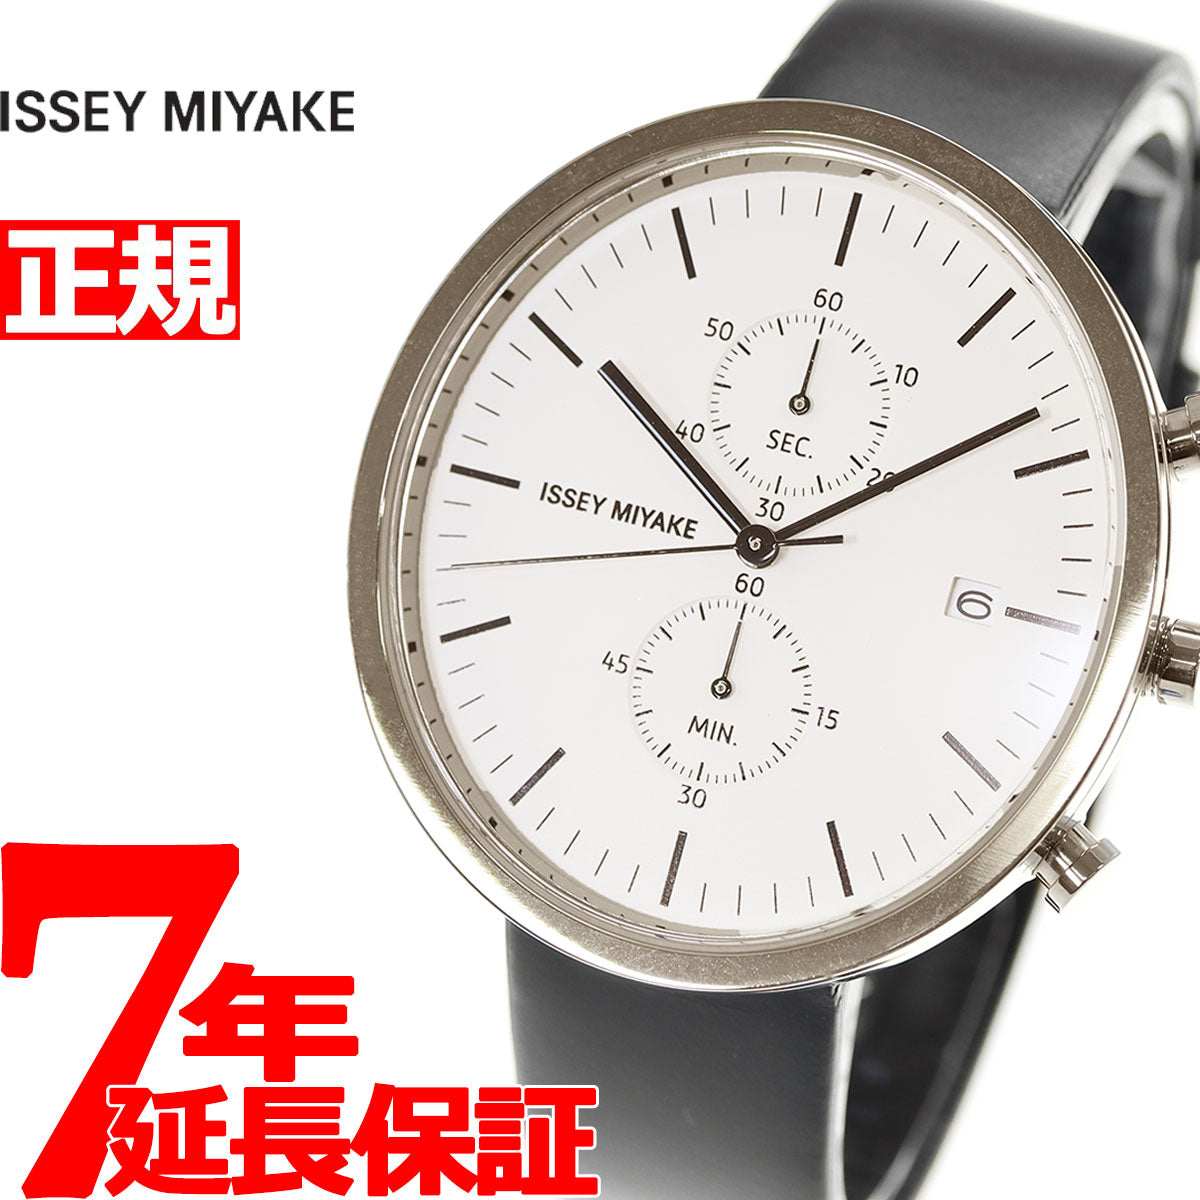 イッセイミヤケ 腕時計 メンズ レディース ISSEY MIYAKE 防水 革ベルト 限定モデル NYAN701 ユニセックス